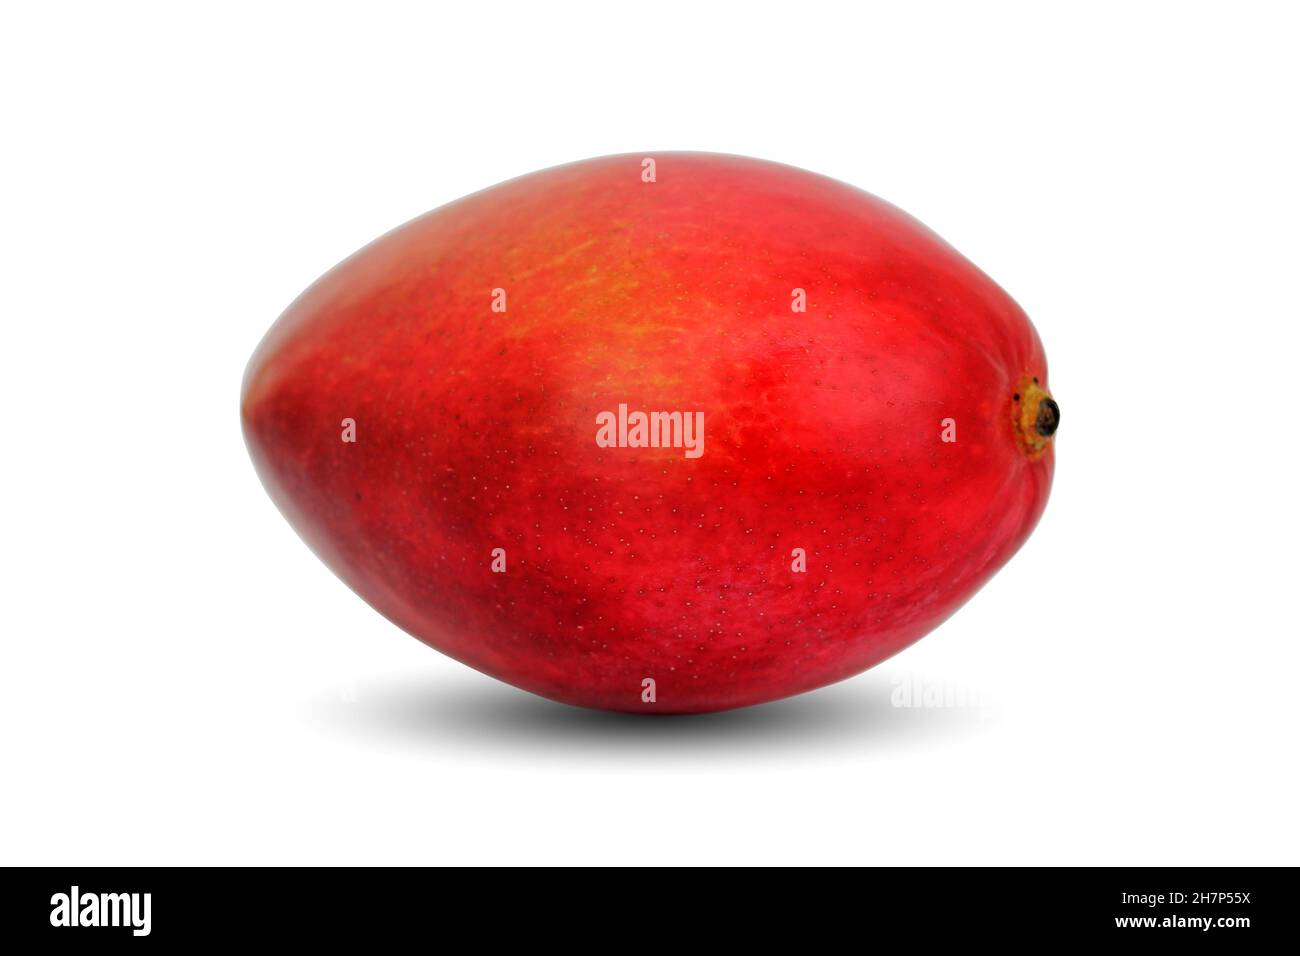 Ripe Mango fruit isolated on white background close up. Stock Photo